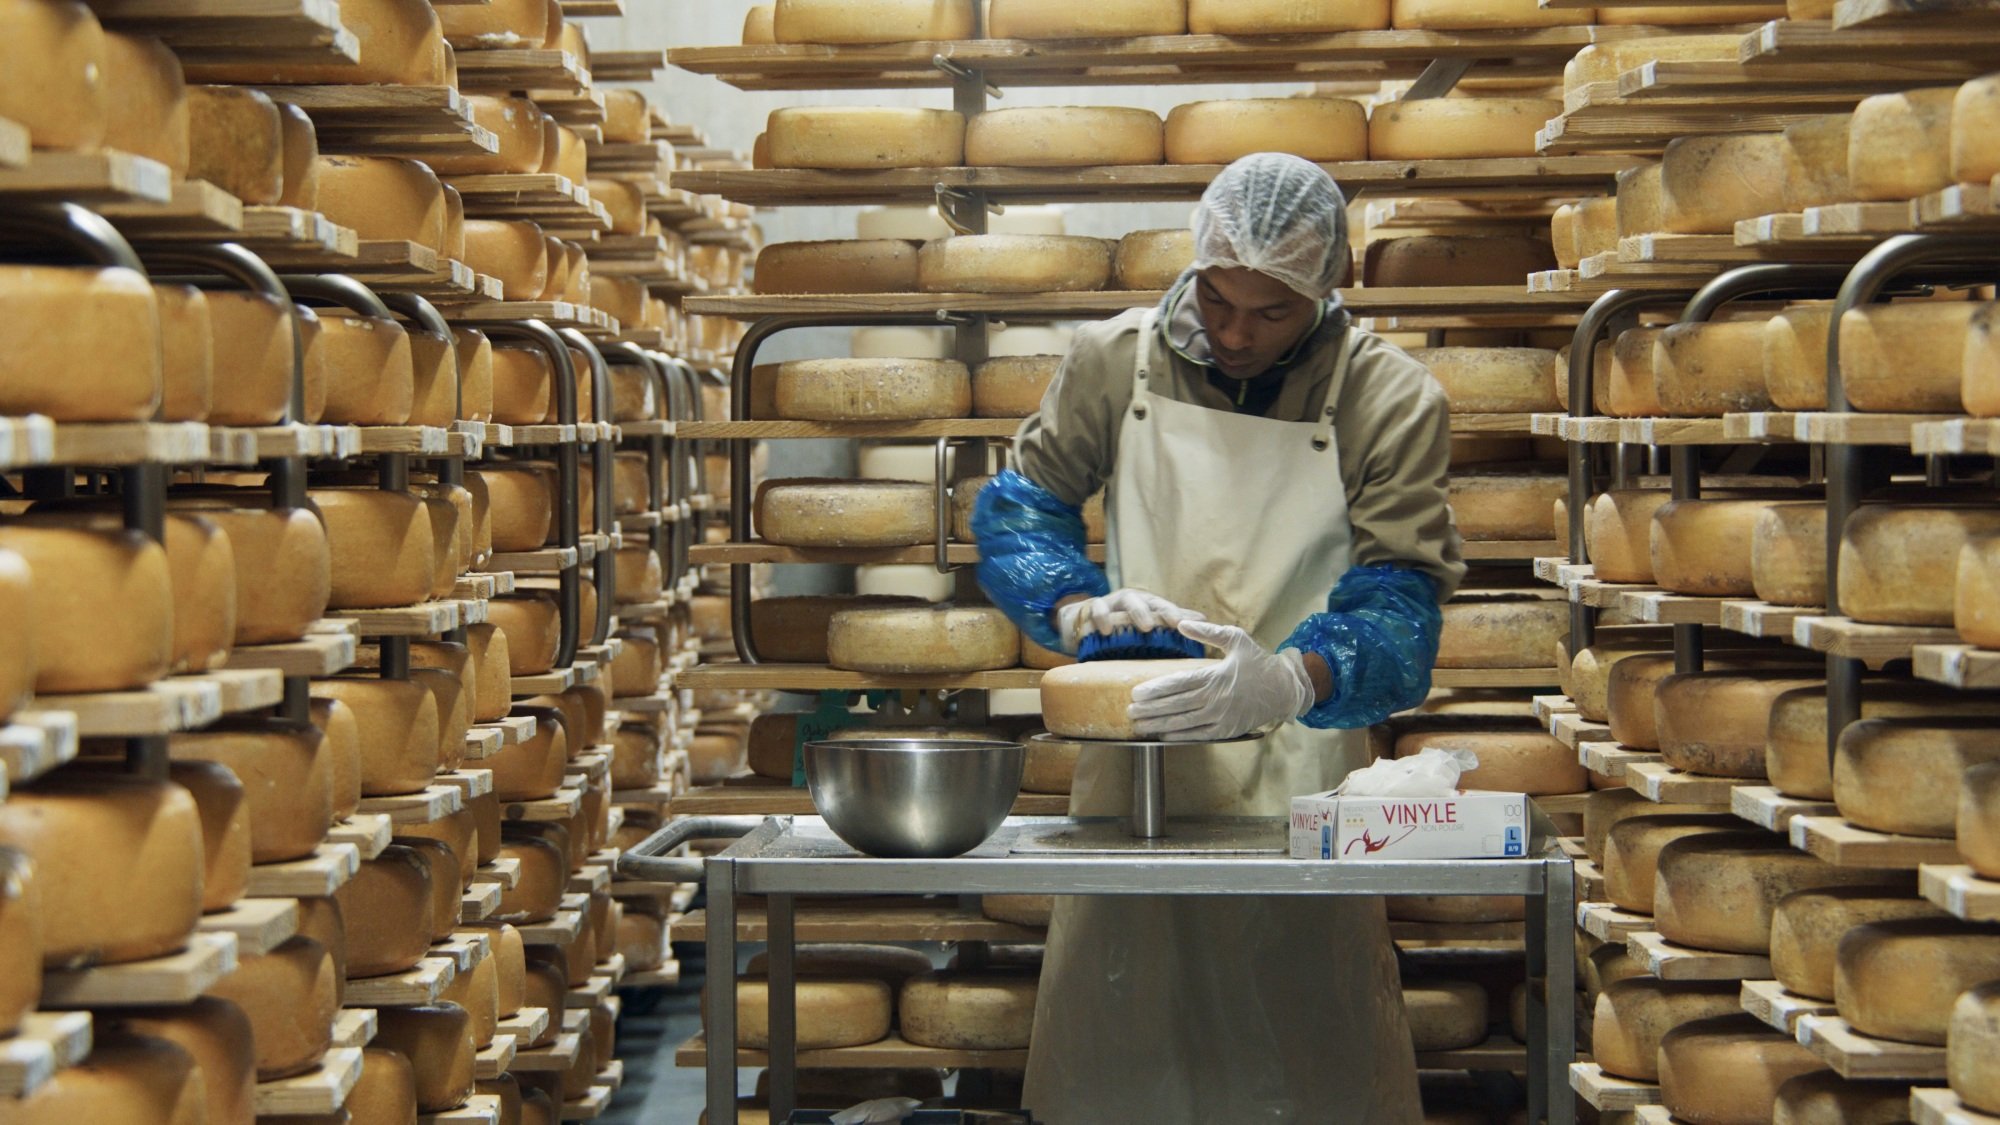 Un homme fabrique une meule de fromage dans une grotte à fromage.